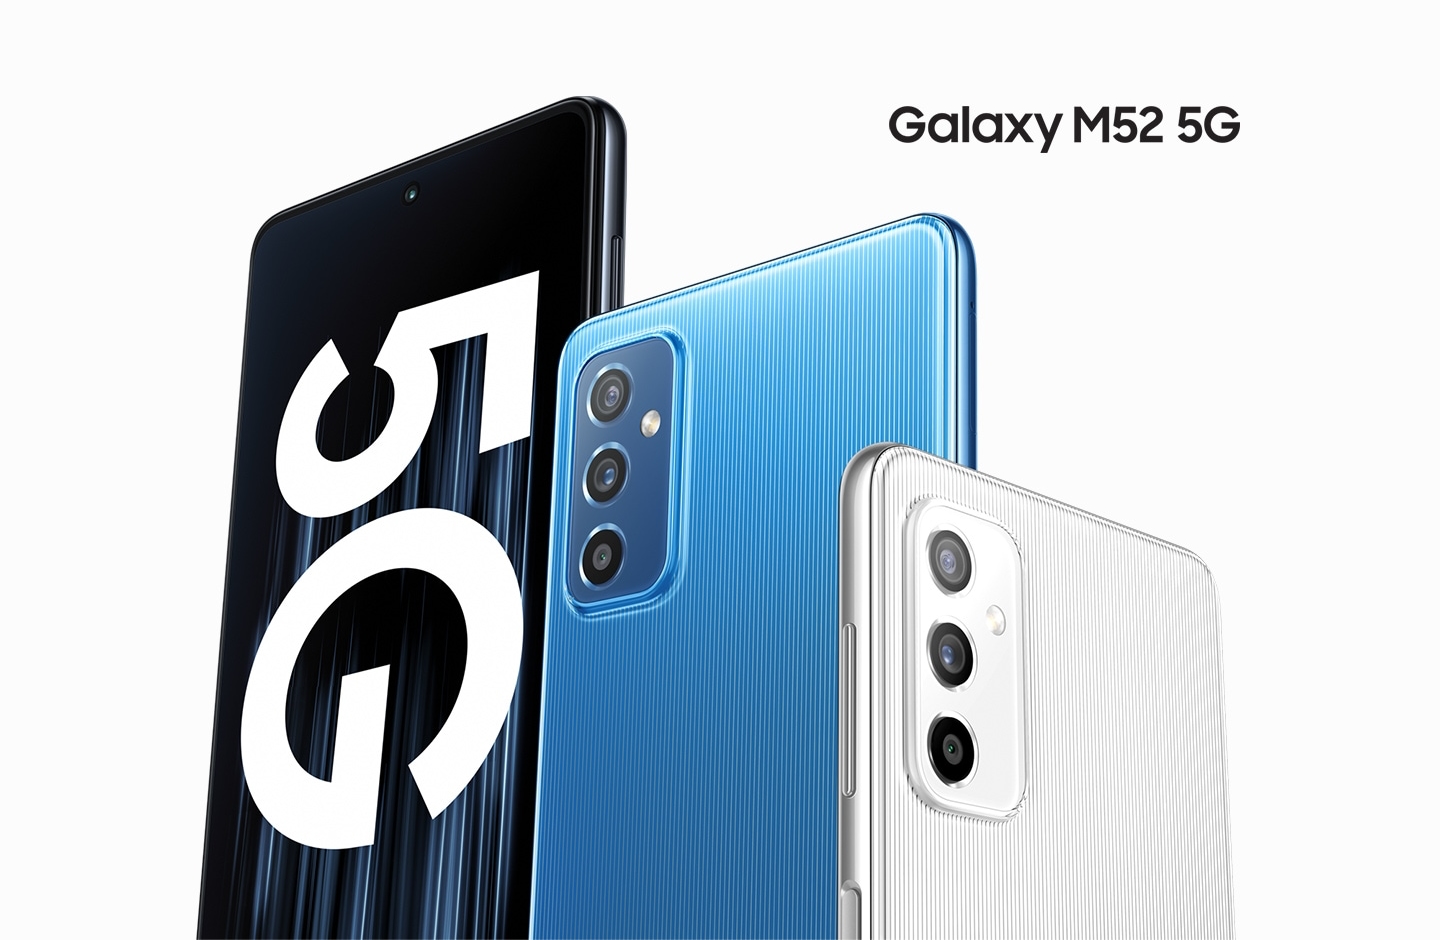 Samsung bringt Galaxy M52 5G in Europa auf den Markt, mit 120Hz AMOLED-Display, NFC, Snapdragon 778G Chip, 64 MP Kamera und ohne Kopfhöreranschluss